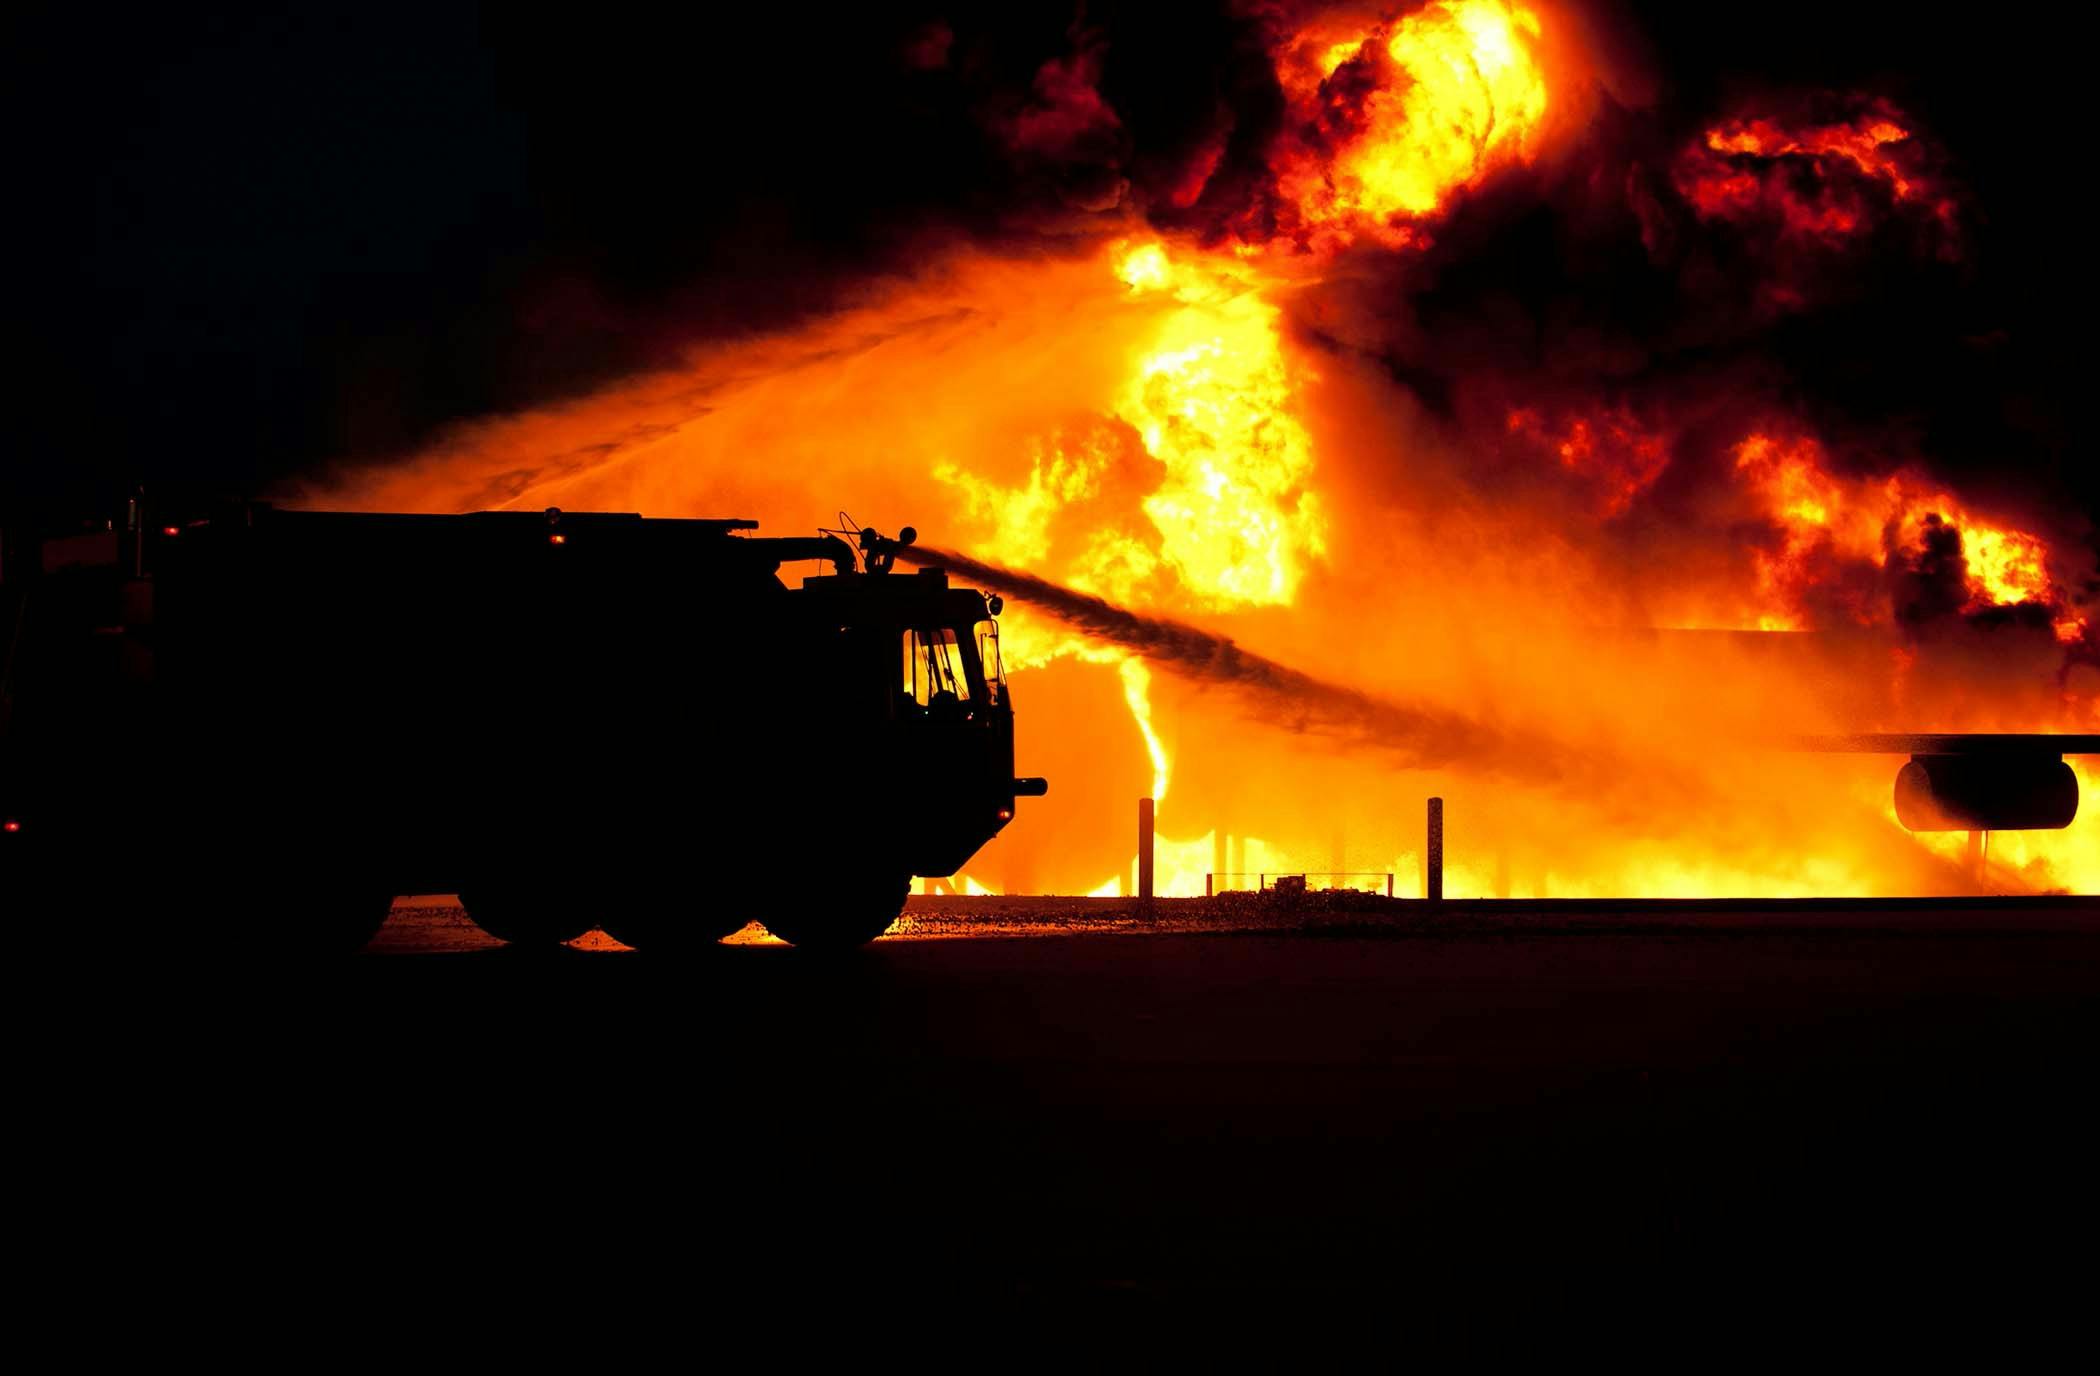 pexels- Incendio en San Blas-Canillejas deja a un vecino con quemaduras graves y moviliza a bomberos en operativo de rescate